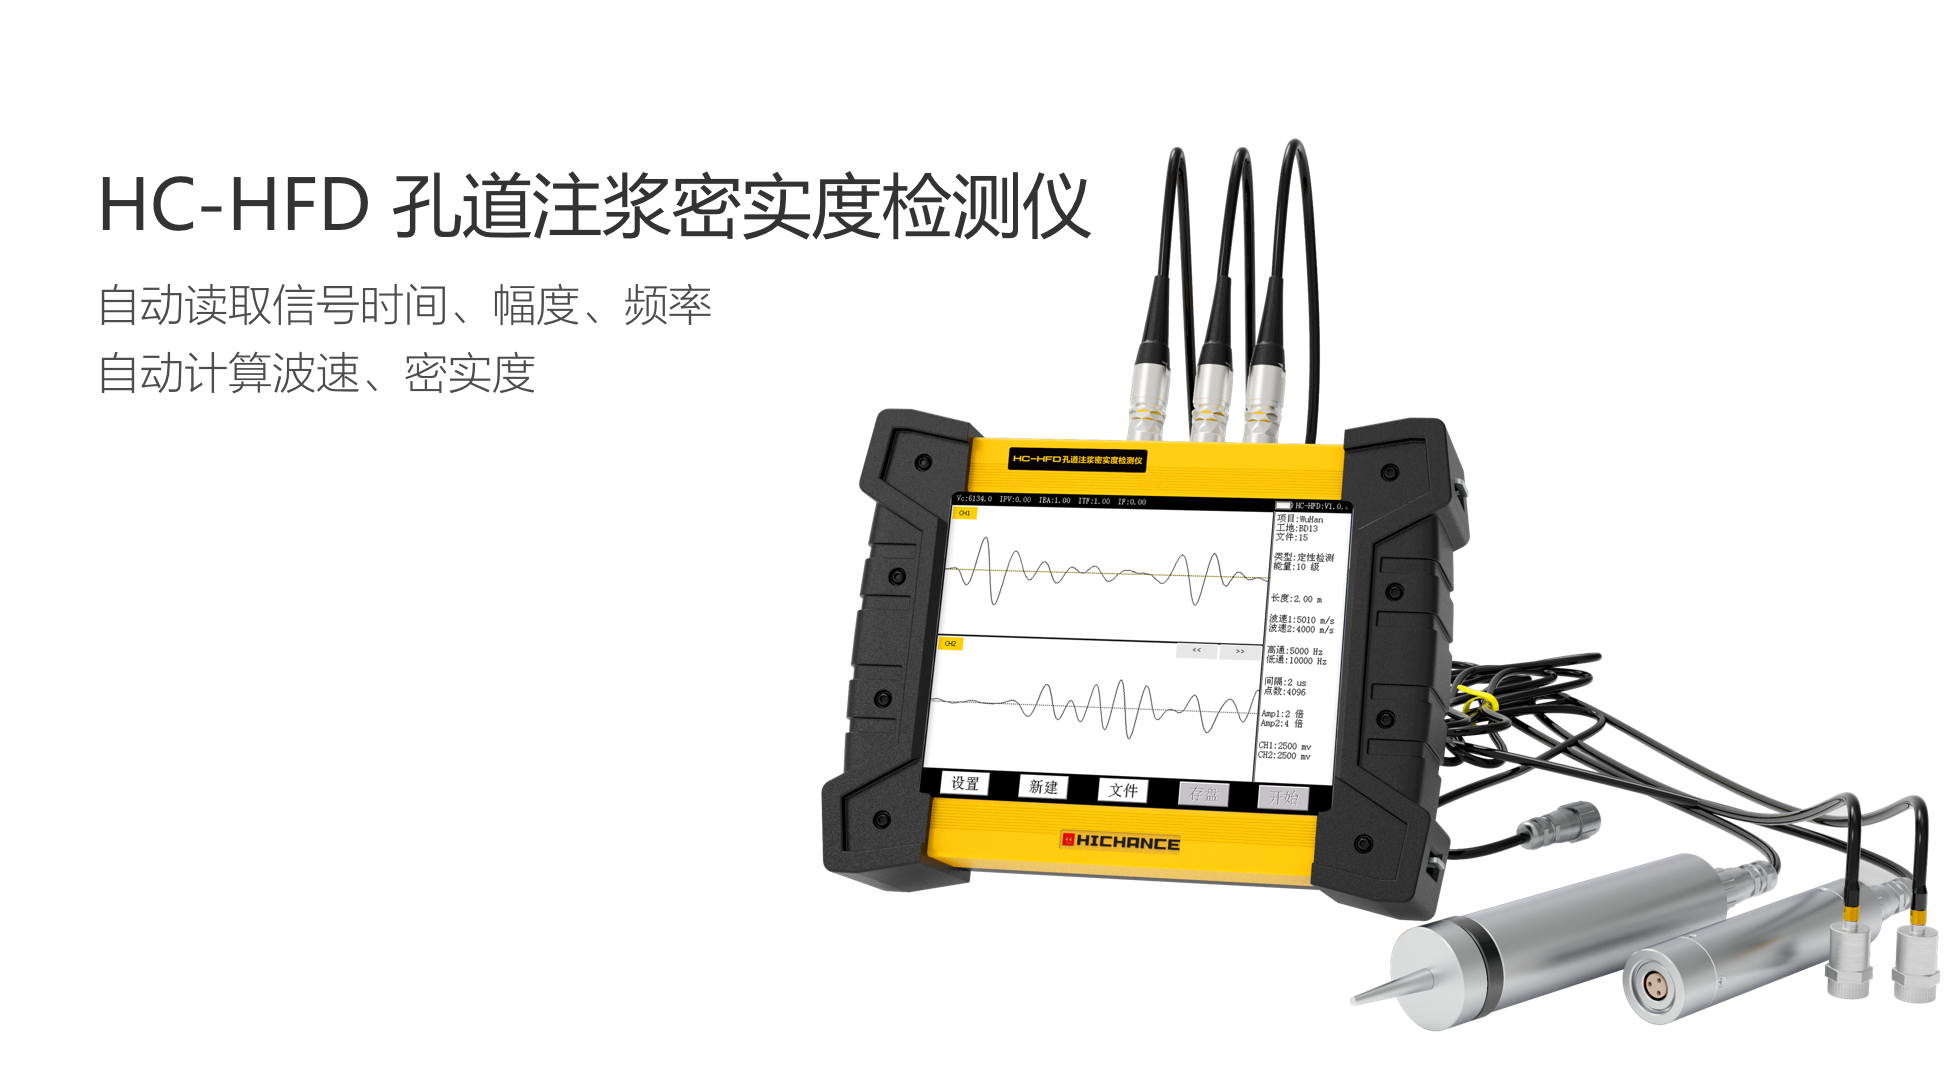 海创高科 HC-HFD 孔道注浆密实度检测仪 自动读取信号时间、幅度、频率以及自动计算波速、密实度